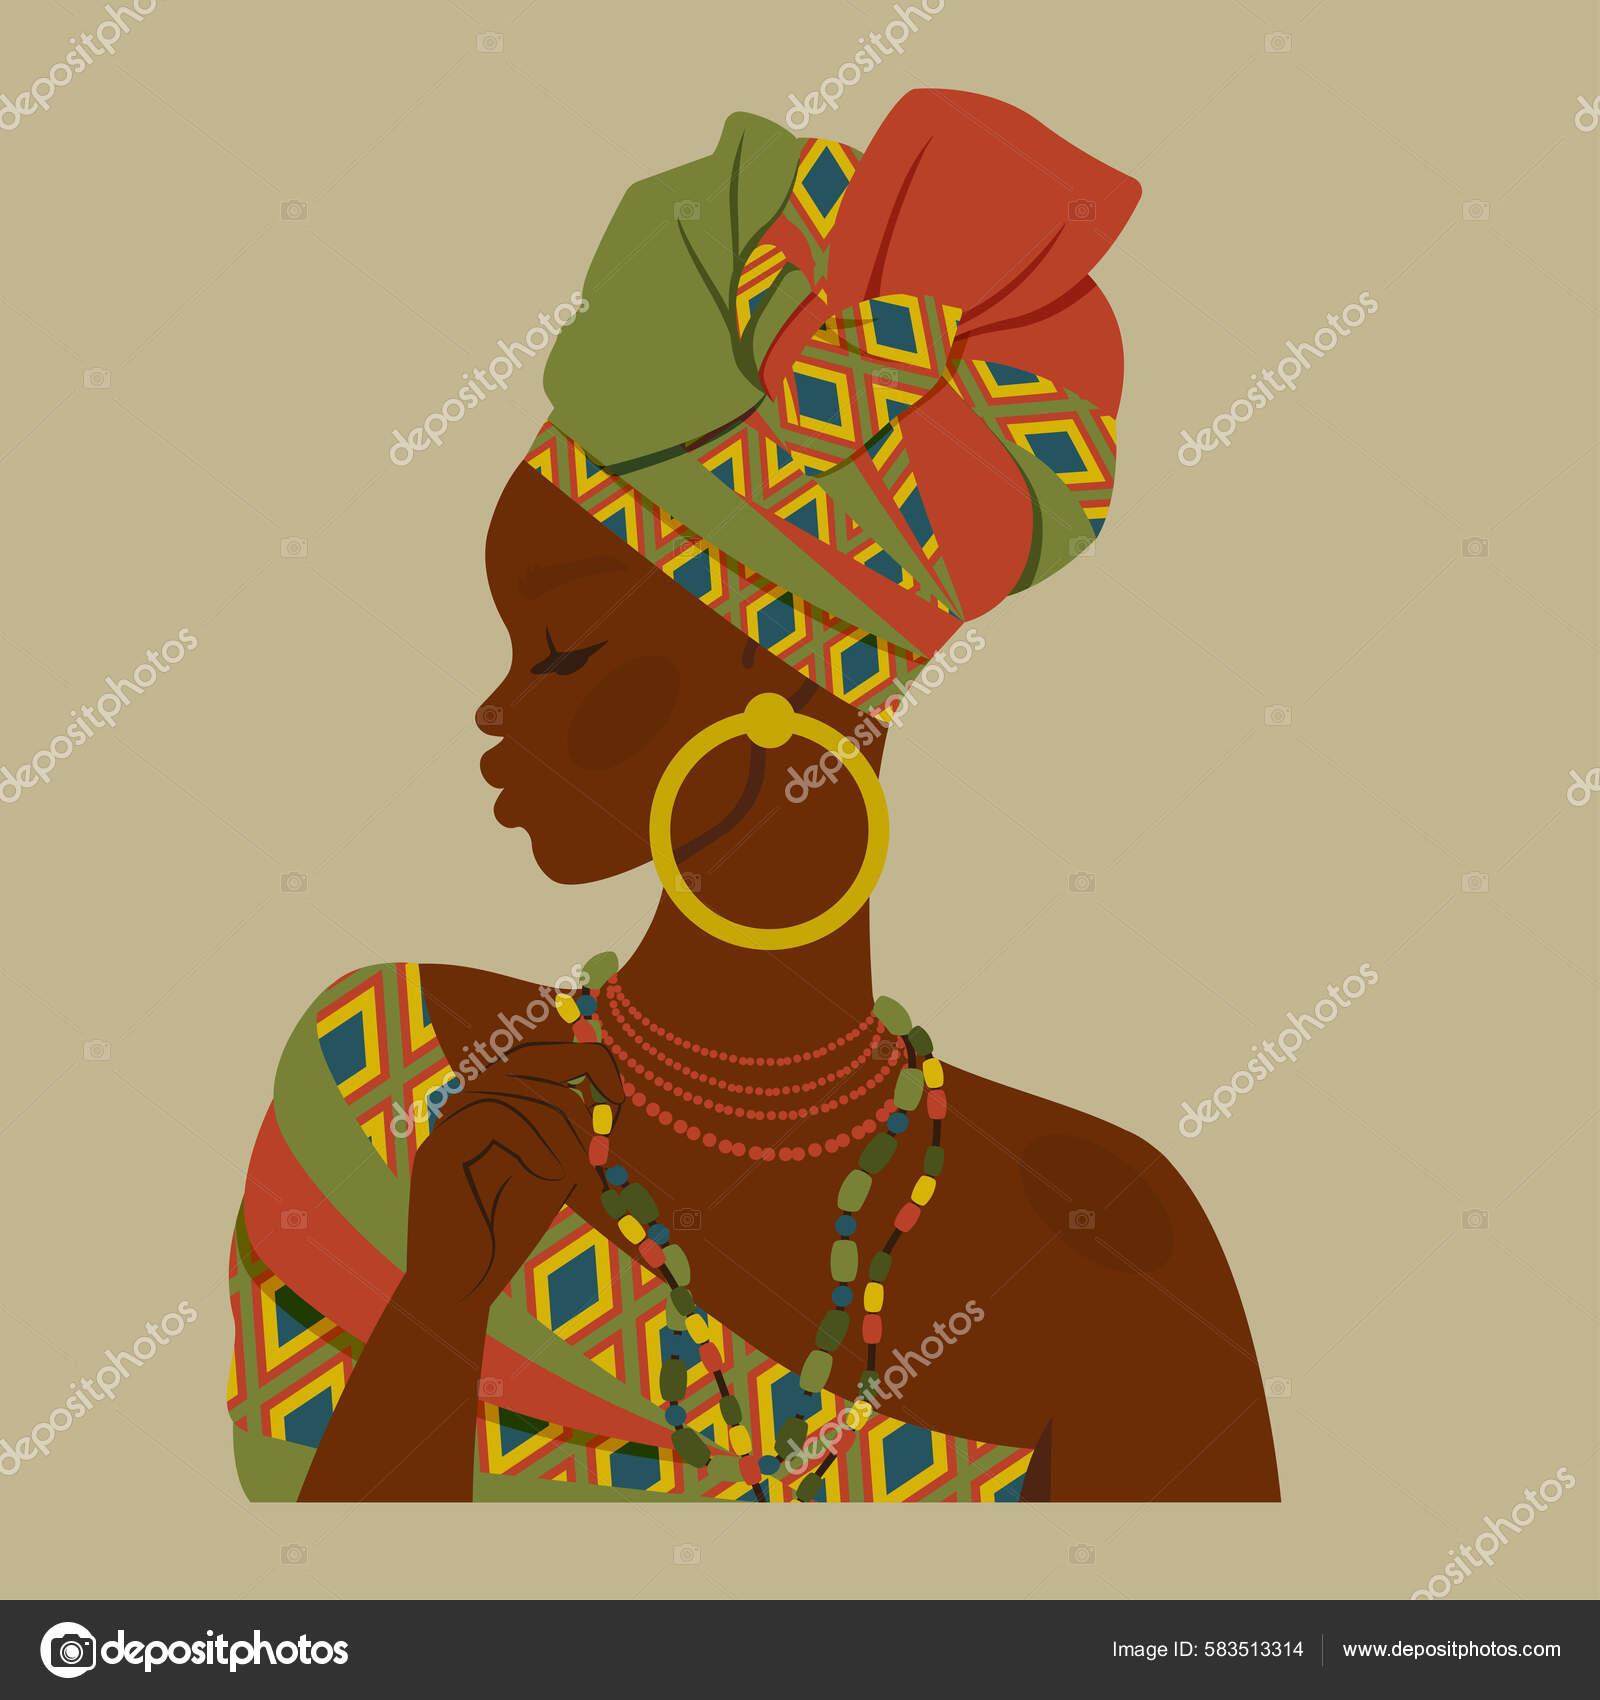 Personagem de desenho animado de mulher negra afro-americana com